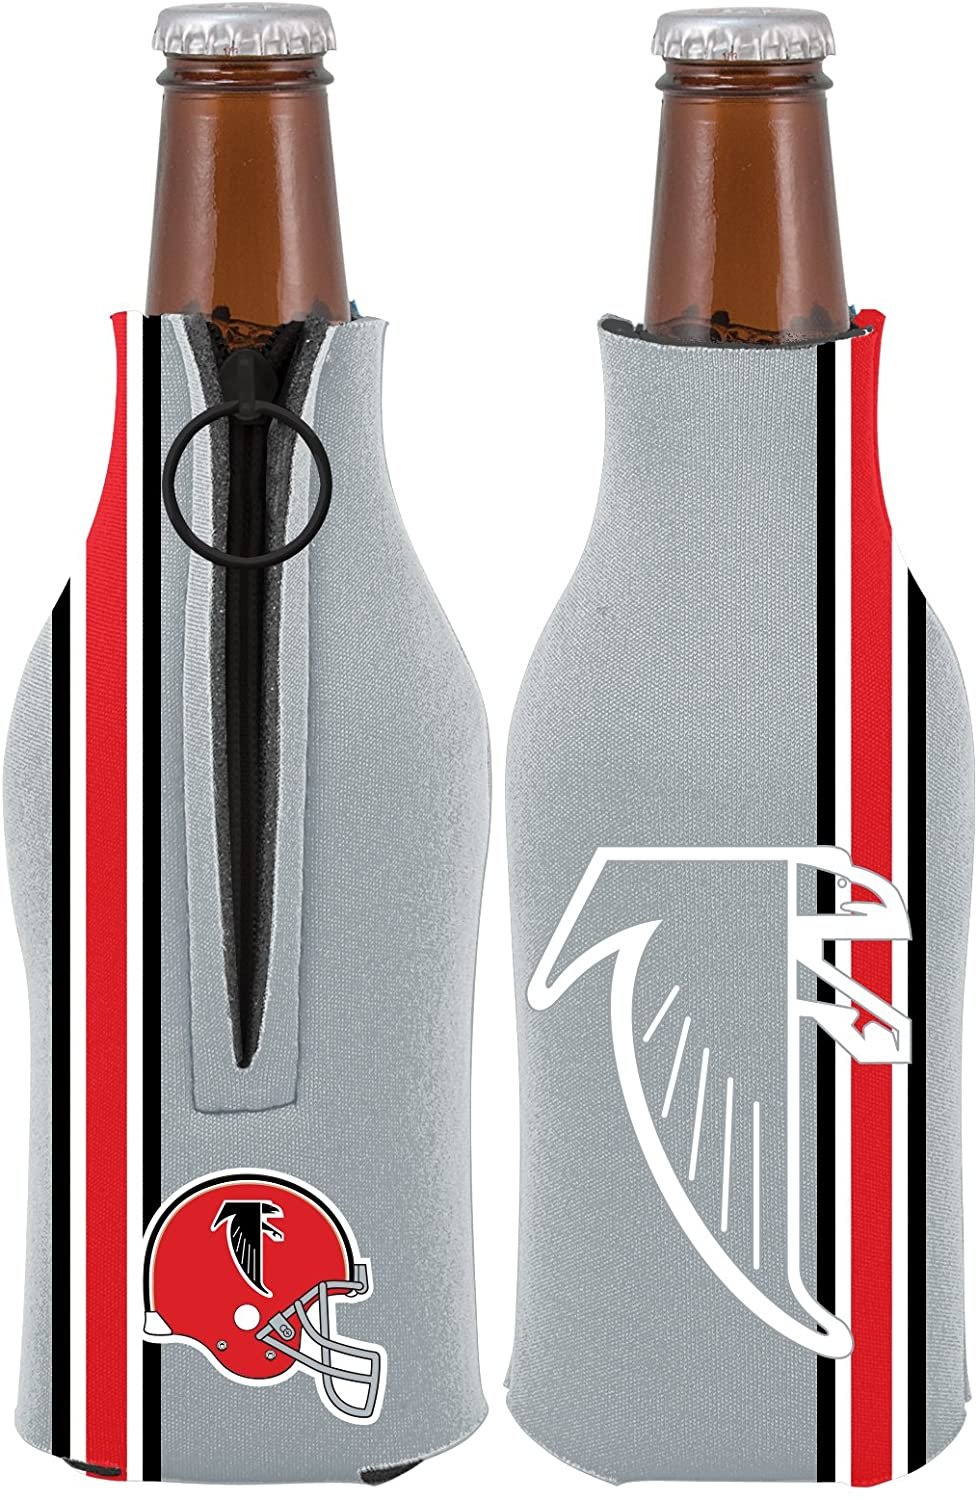 Atlanta Falcons Pair of 16oz Drink Zipper Bottle Cooler Insulated Neoprene Beverage Holder, Retro Design